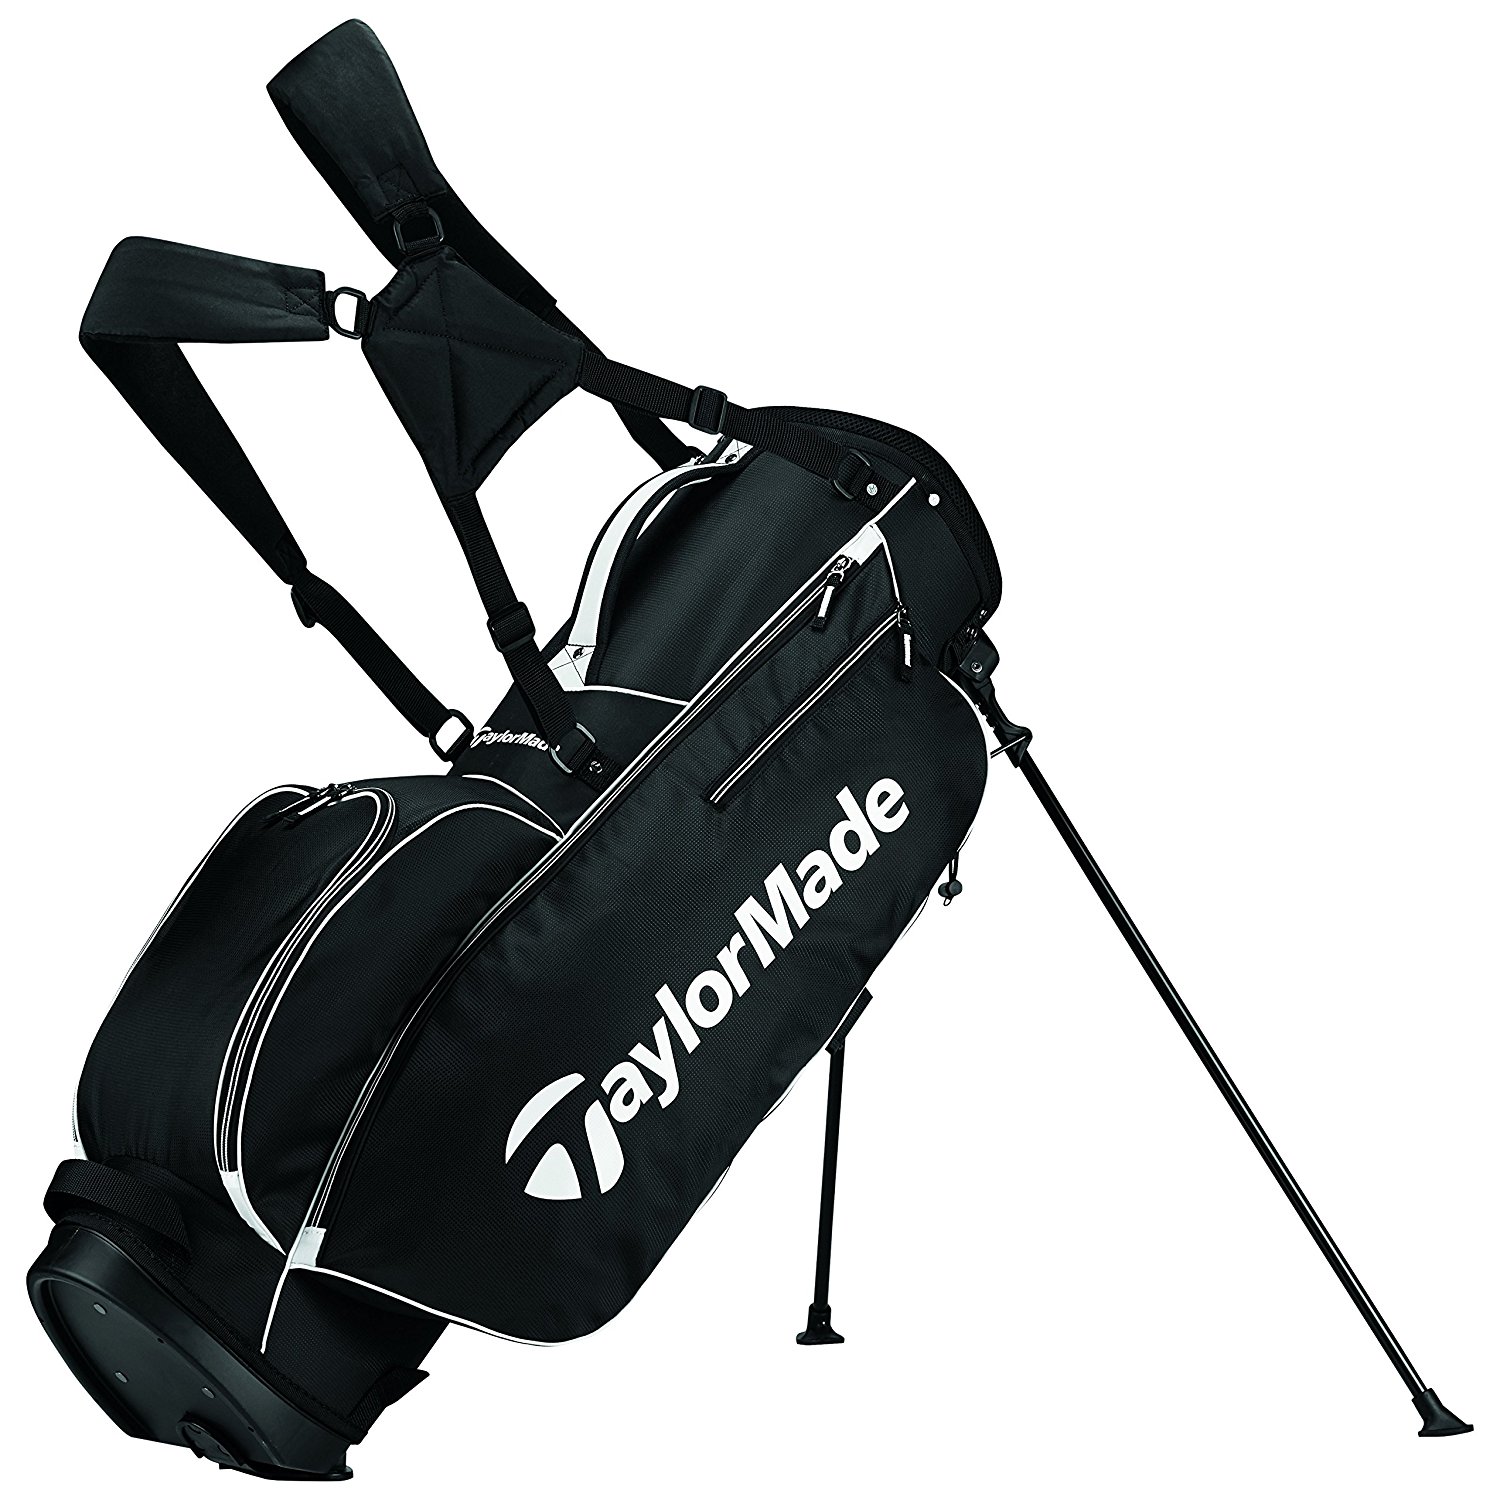 Cheap golf bags uk